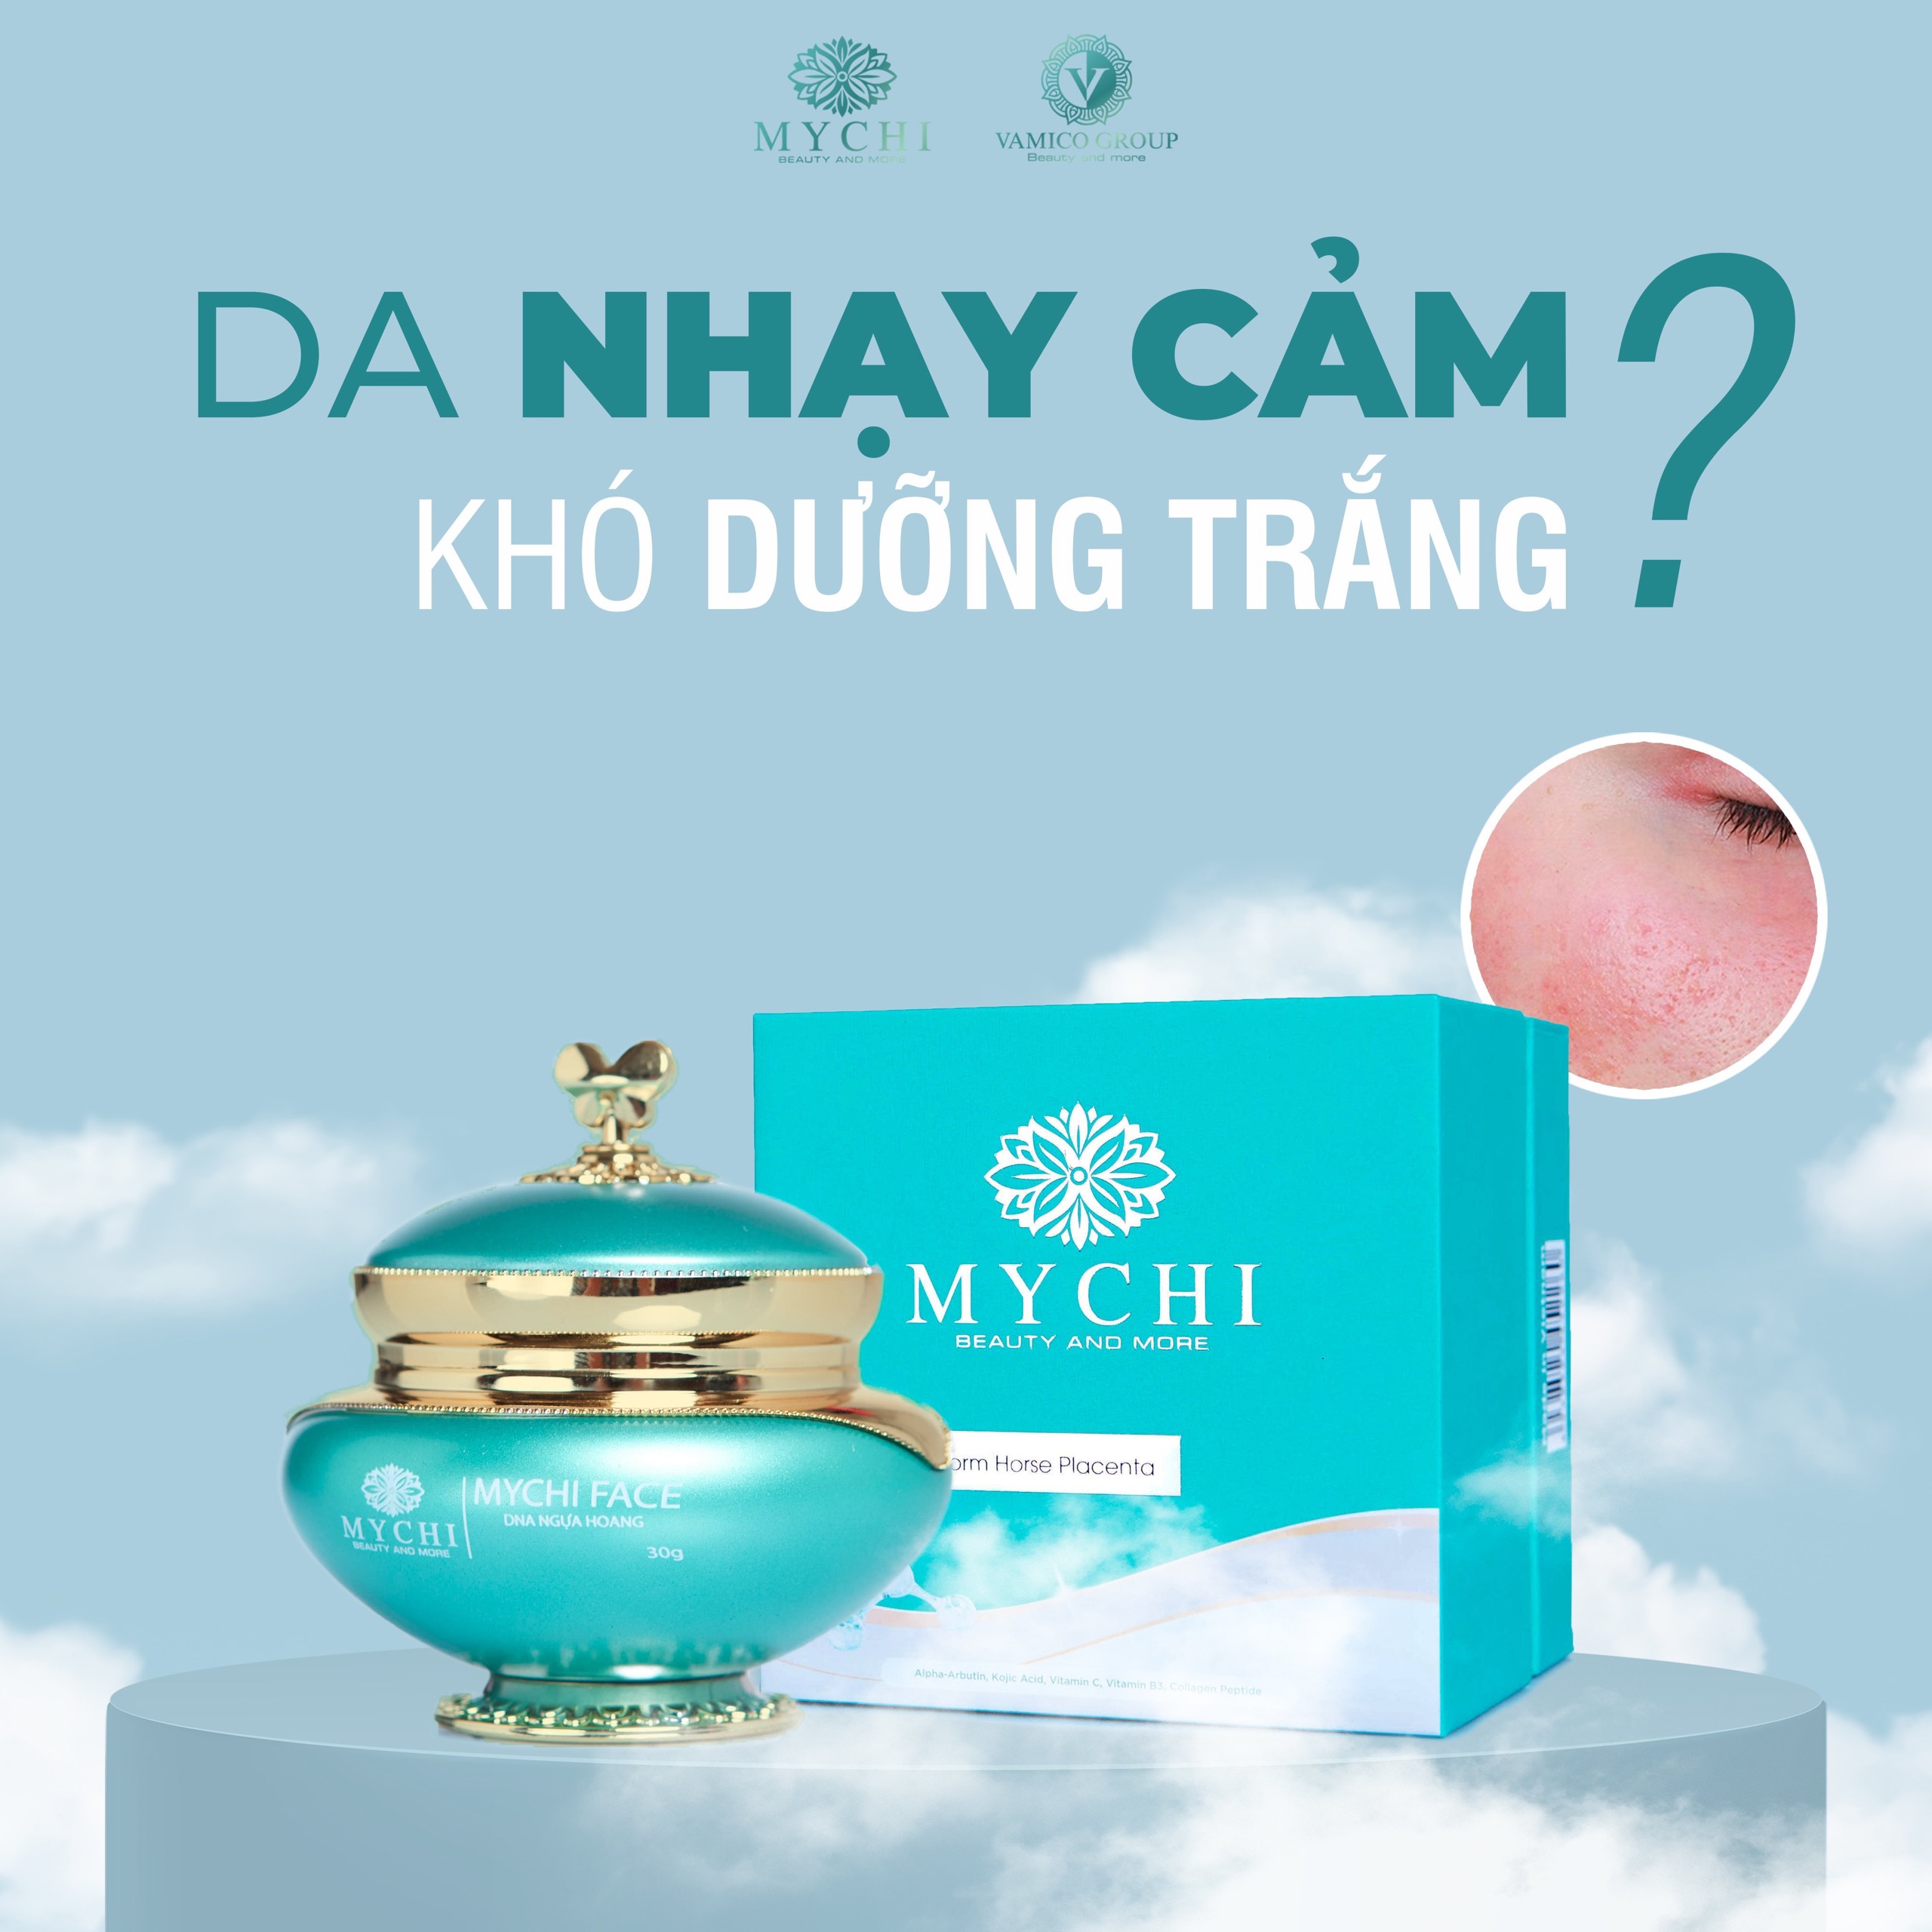 Kem face Mychi dưỡng da mặt cao cấp của Tập Đoàn Vamico Việt Nam